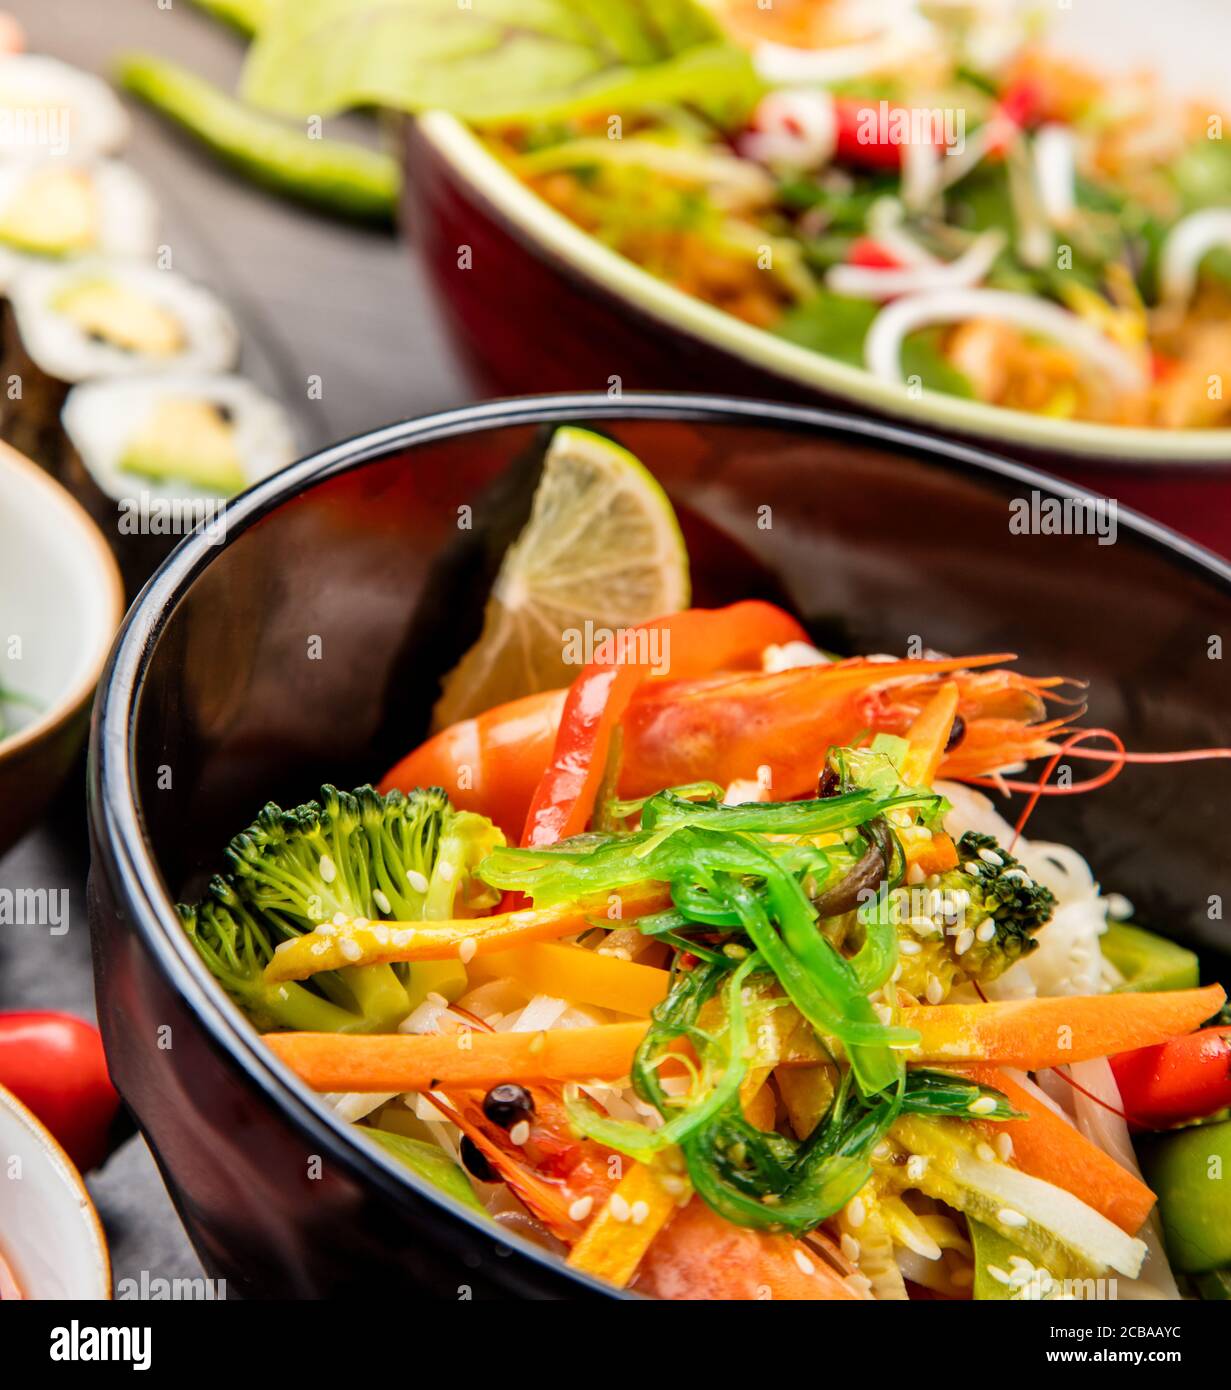 Asiatische Variation von Mahlzeiten in Keramik Schalen serviert. Nahaufnahme, detaillierte Foto. Stockfoto